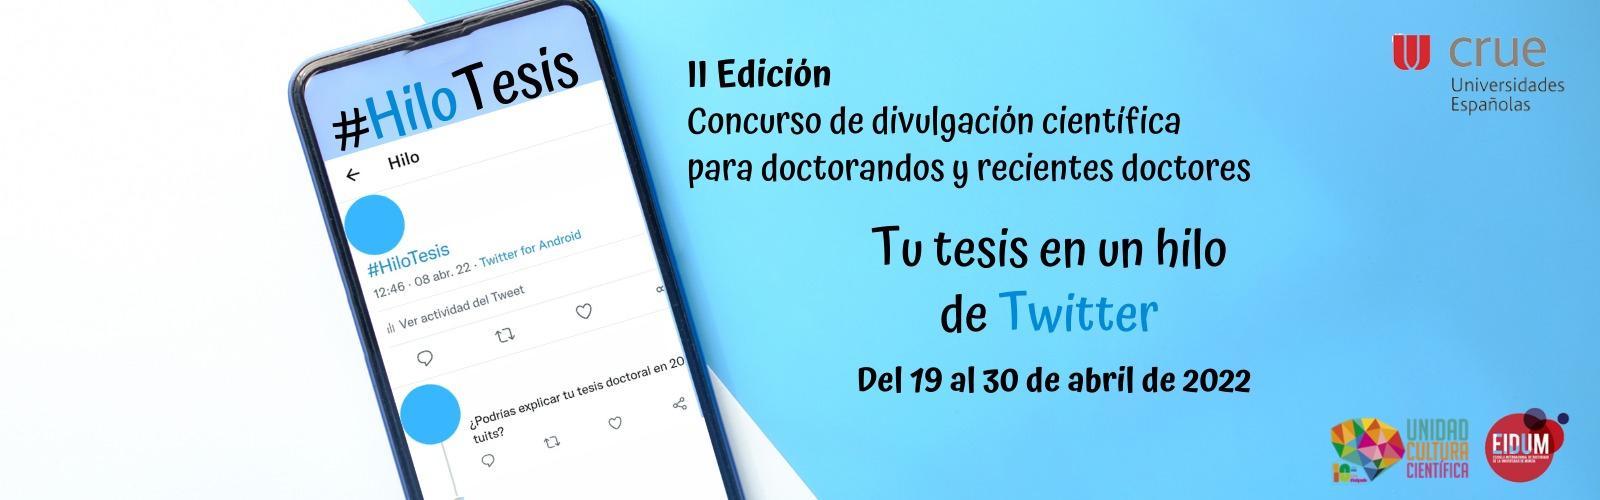 Cuéntame tu tesis en Twitter: arranca la II edición del concurso #HiloTesis